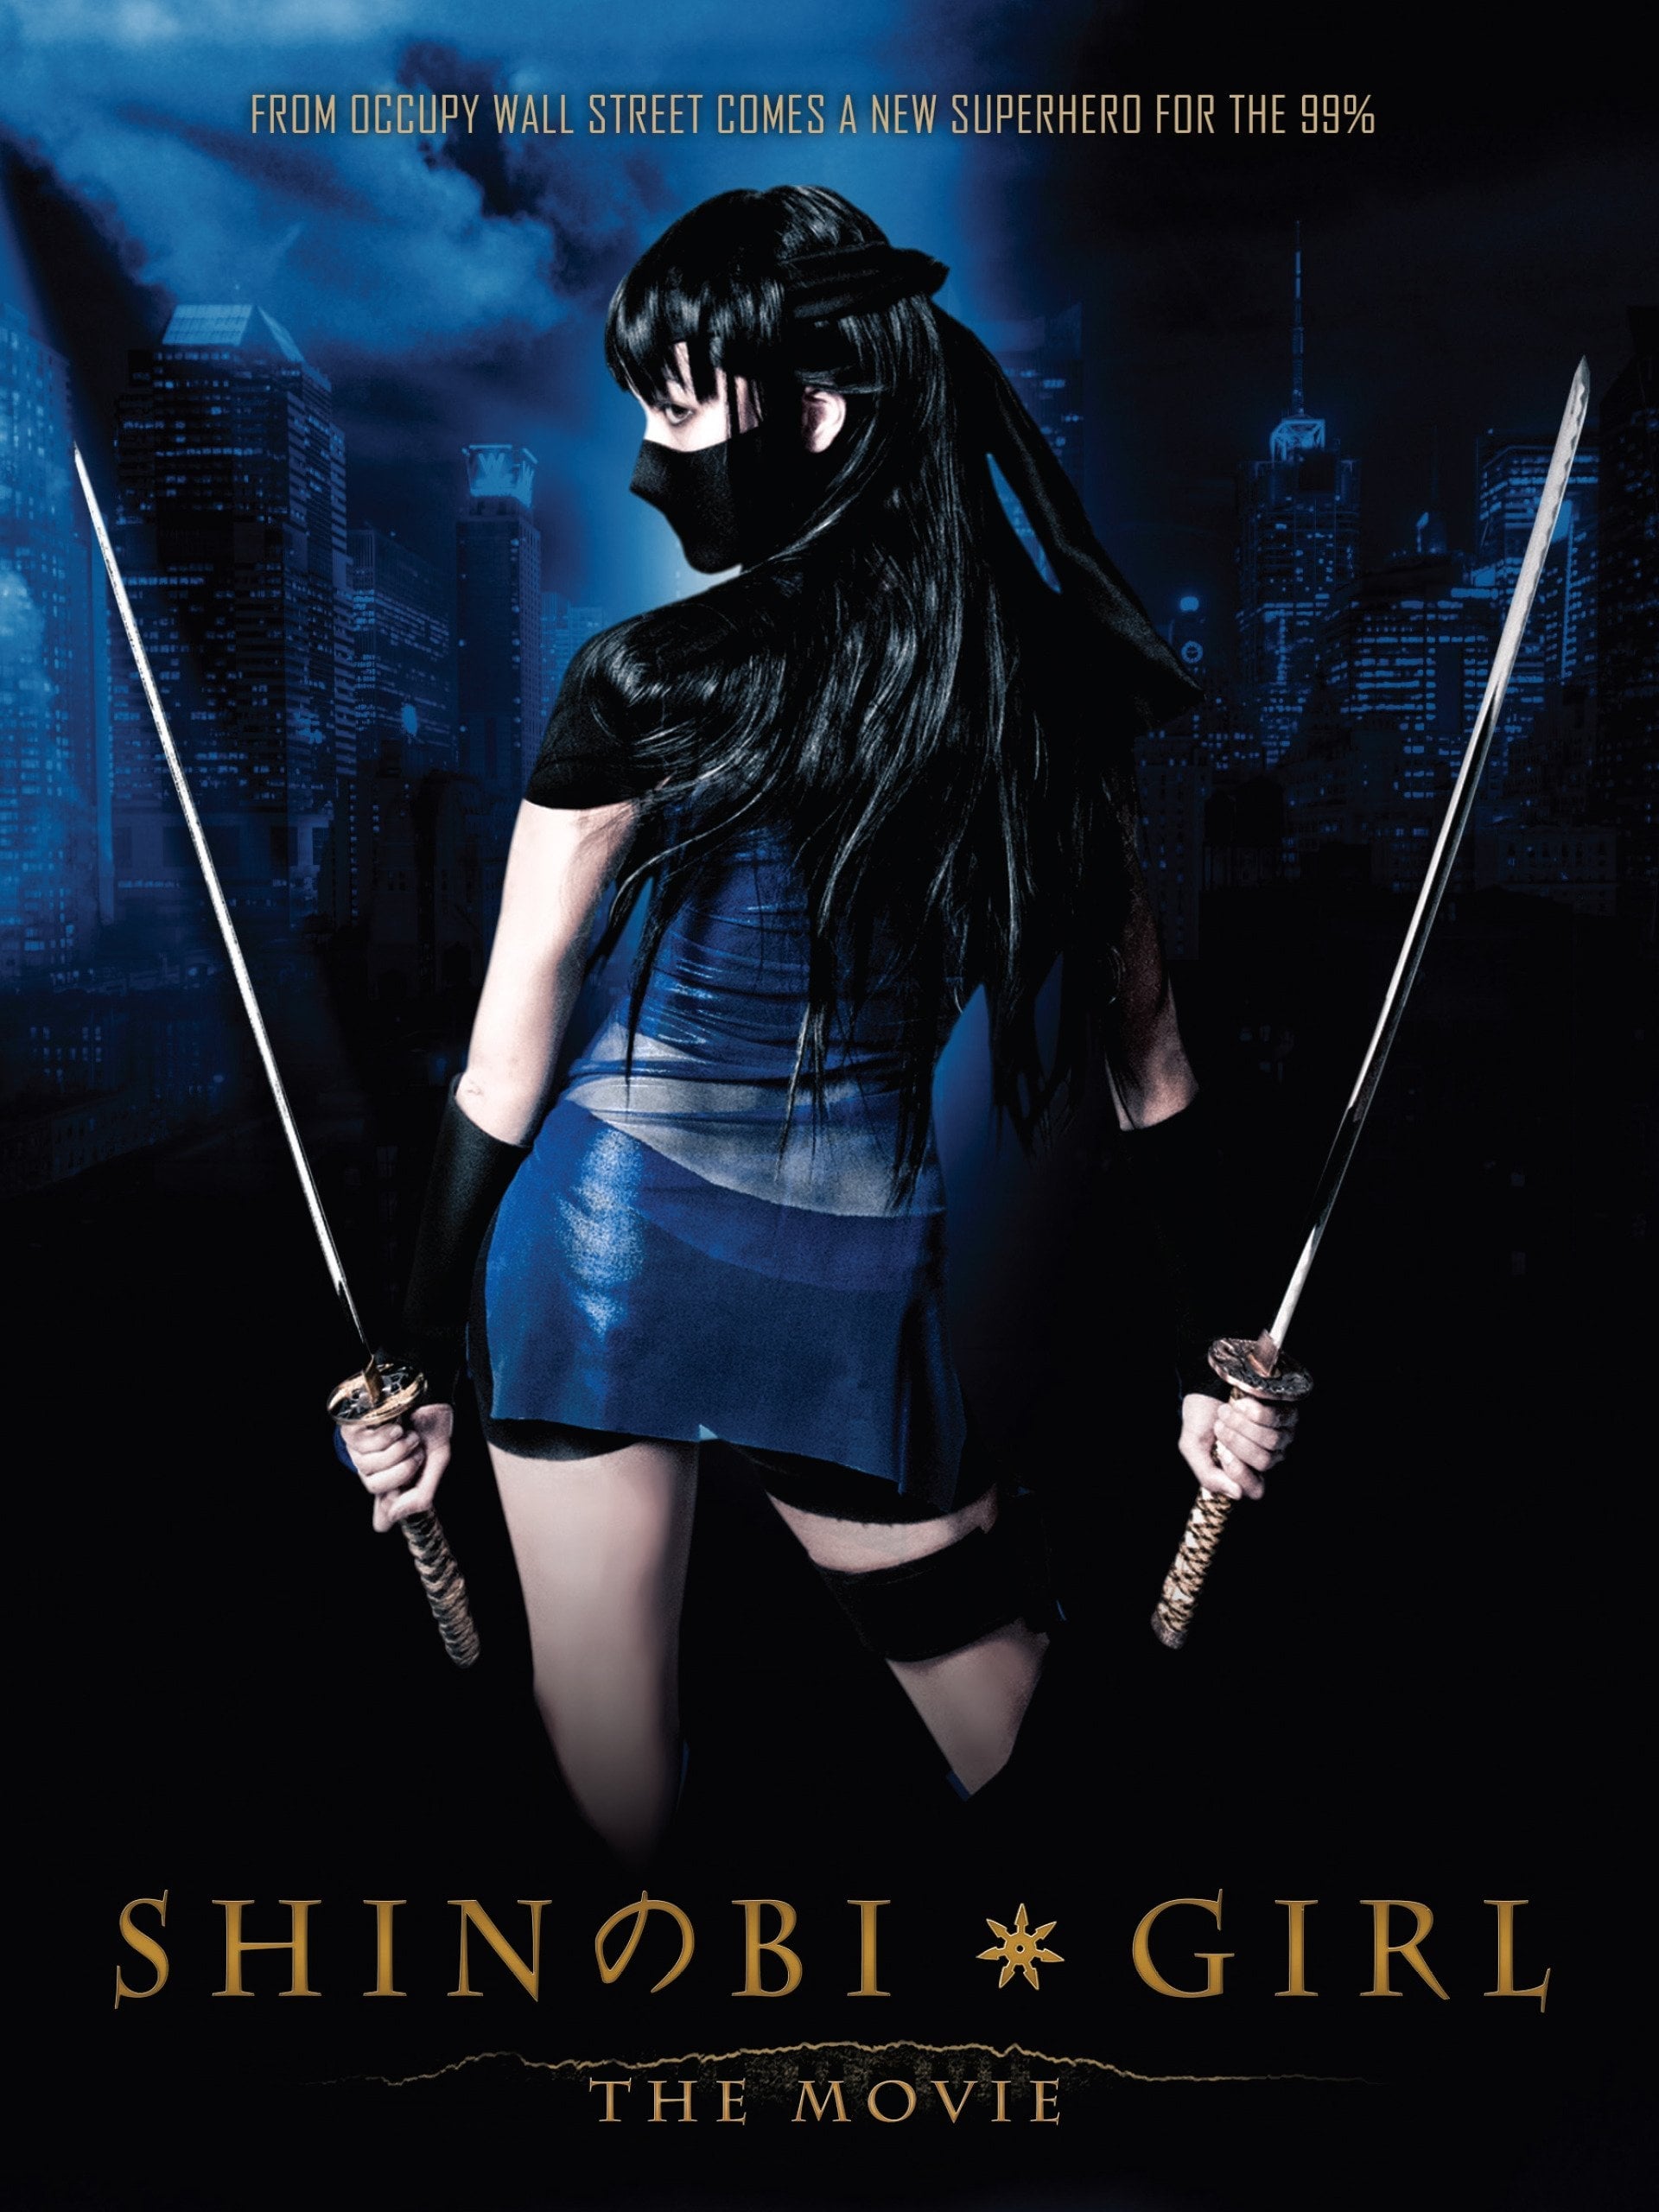 Shinobi Girl: The Movie